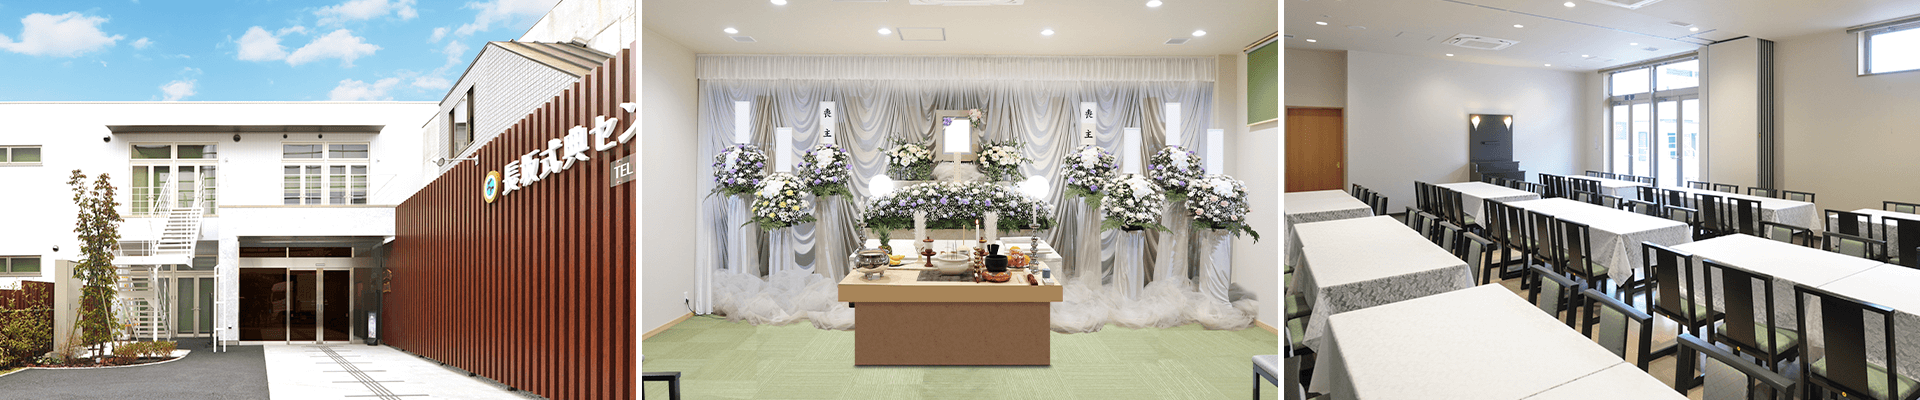 葬儀・葬式・家族葬なら16.5万円からできる長坂式典センター 小金井市の葬儀場一覧